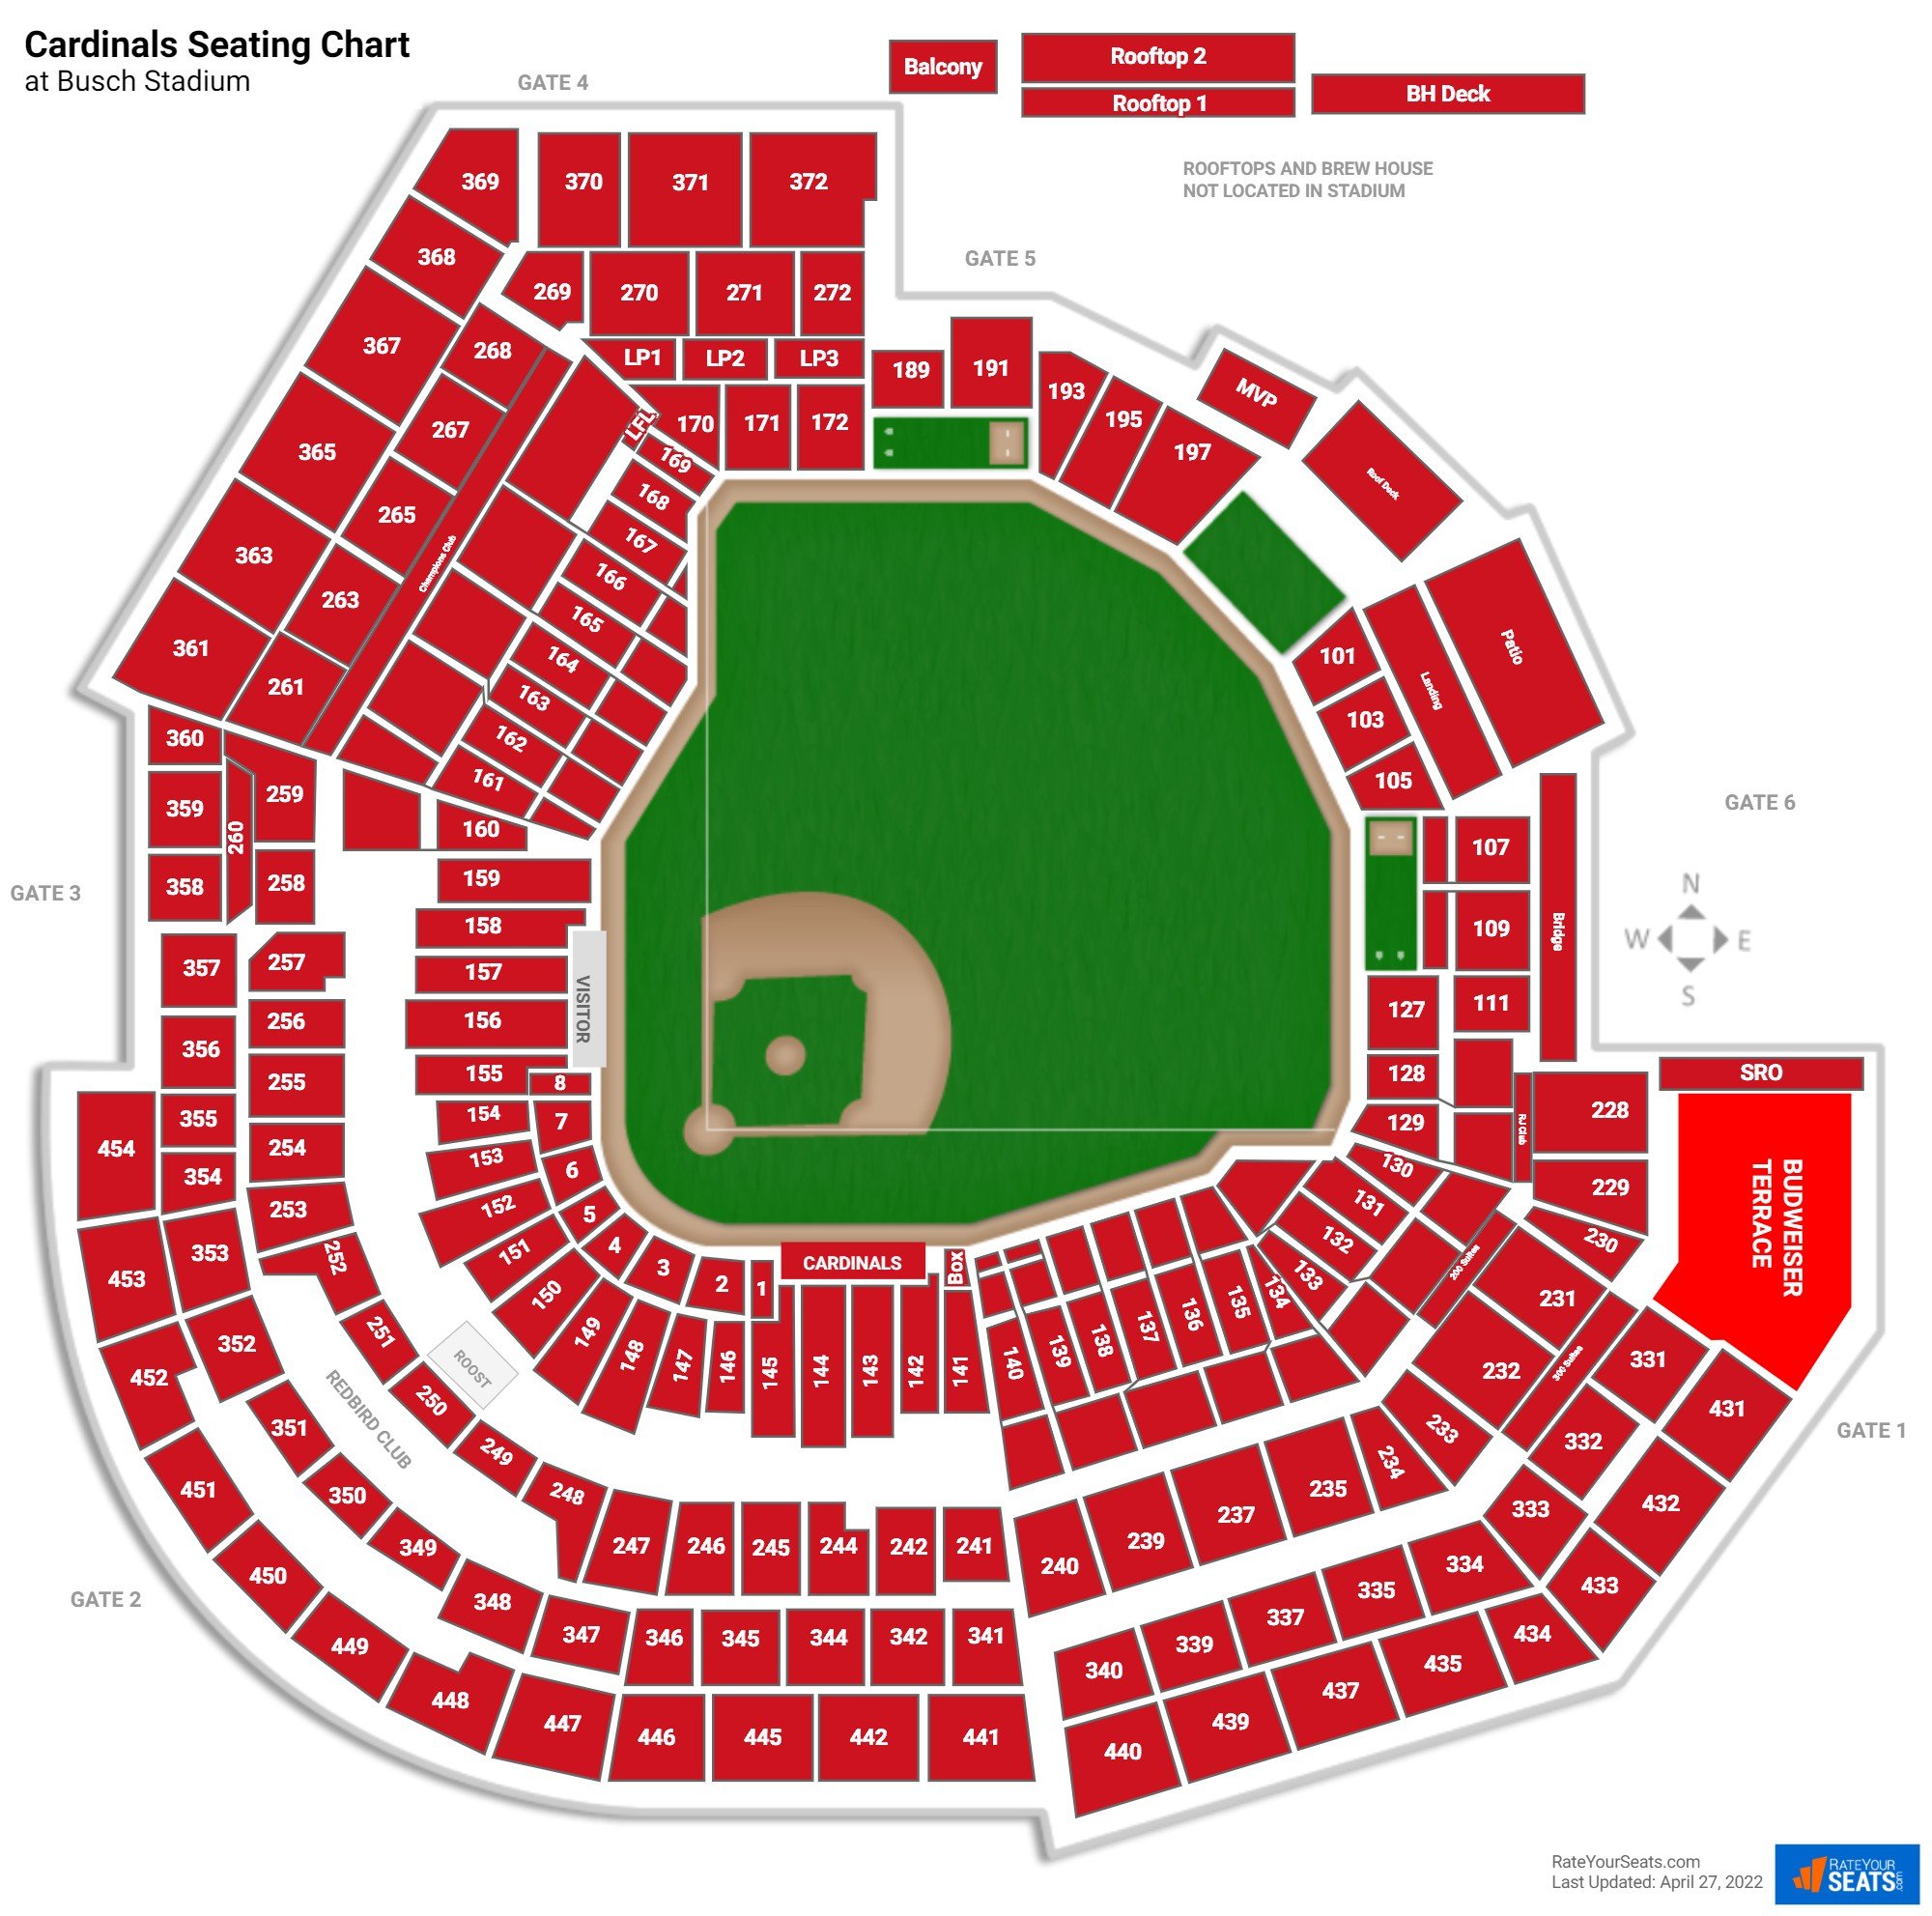 St. Louis Cardinals Seating Chart at Busch Stadium